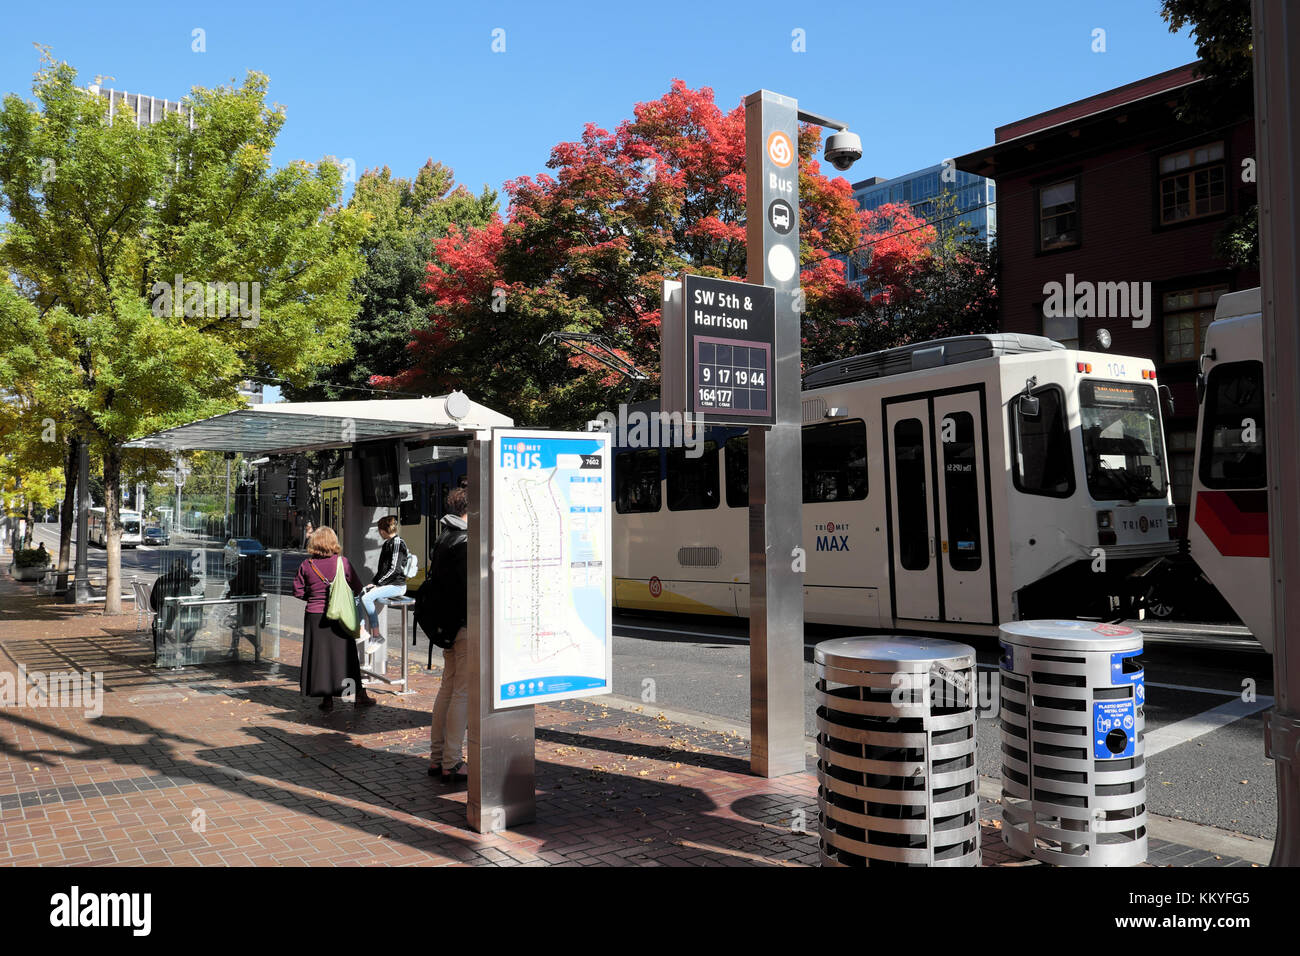 Les gens à un abri bus en attente d'un bus, tramway ou tram dans SW 5th & Harrison dans une rue de Portland, Oregon, USA KATHY DEWITT Banque D'Images